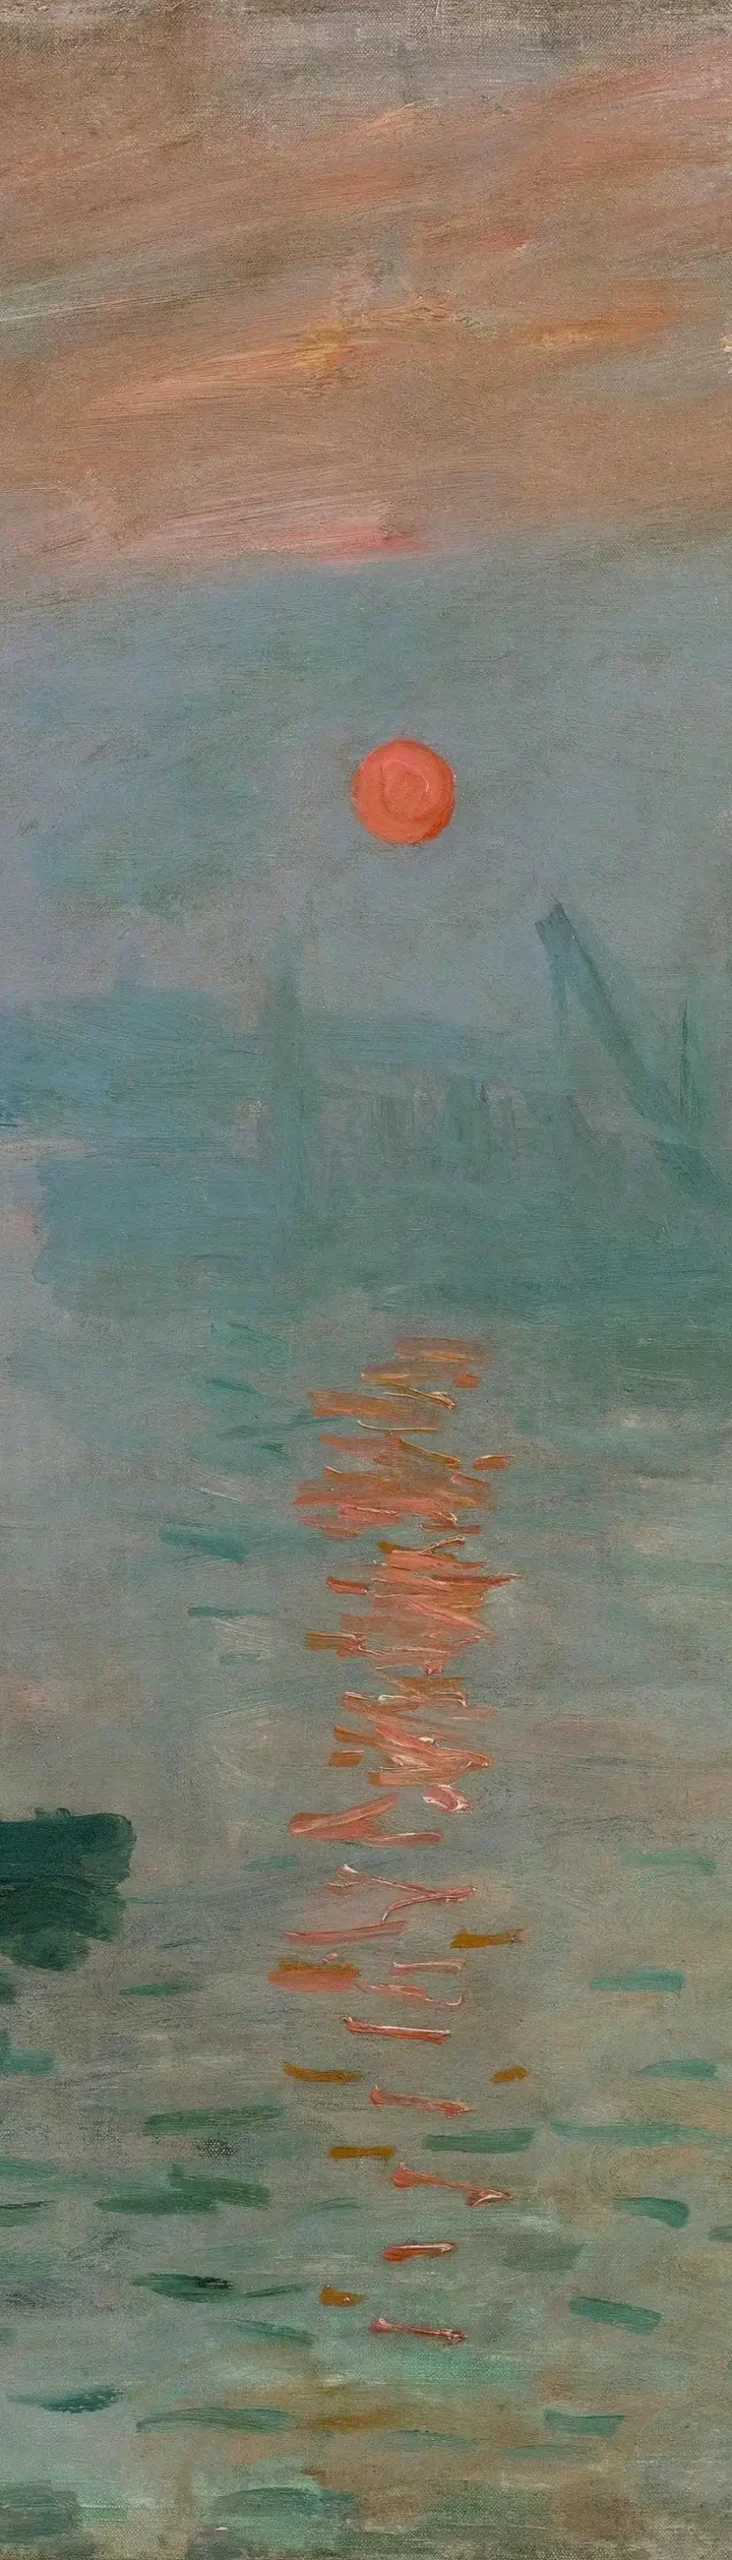 Detalles de color y luz del cuadro de Monet "Amanecer" 